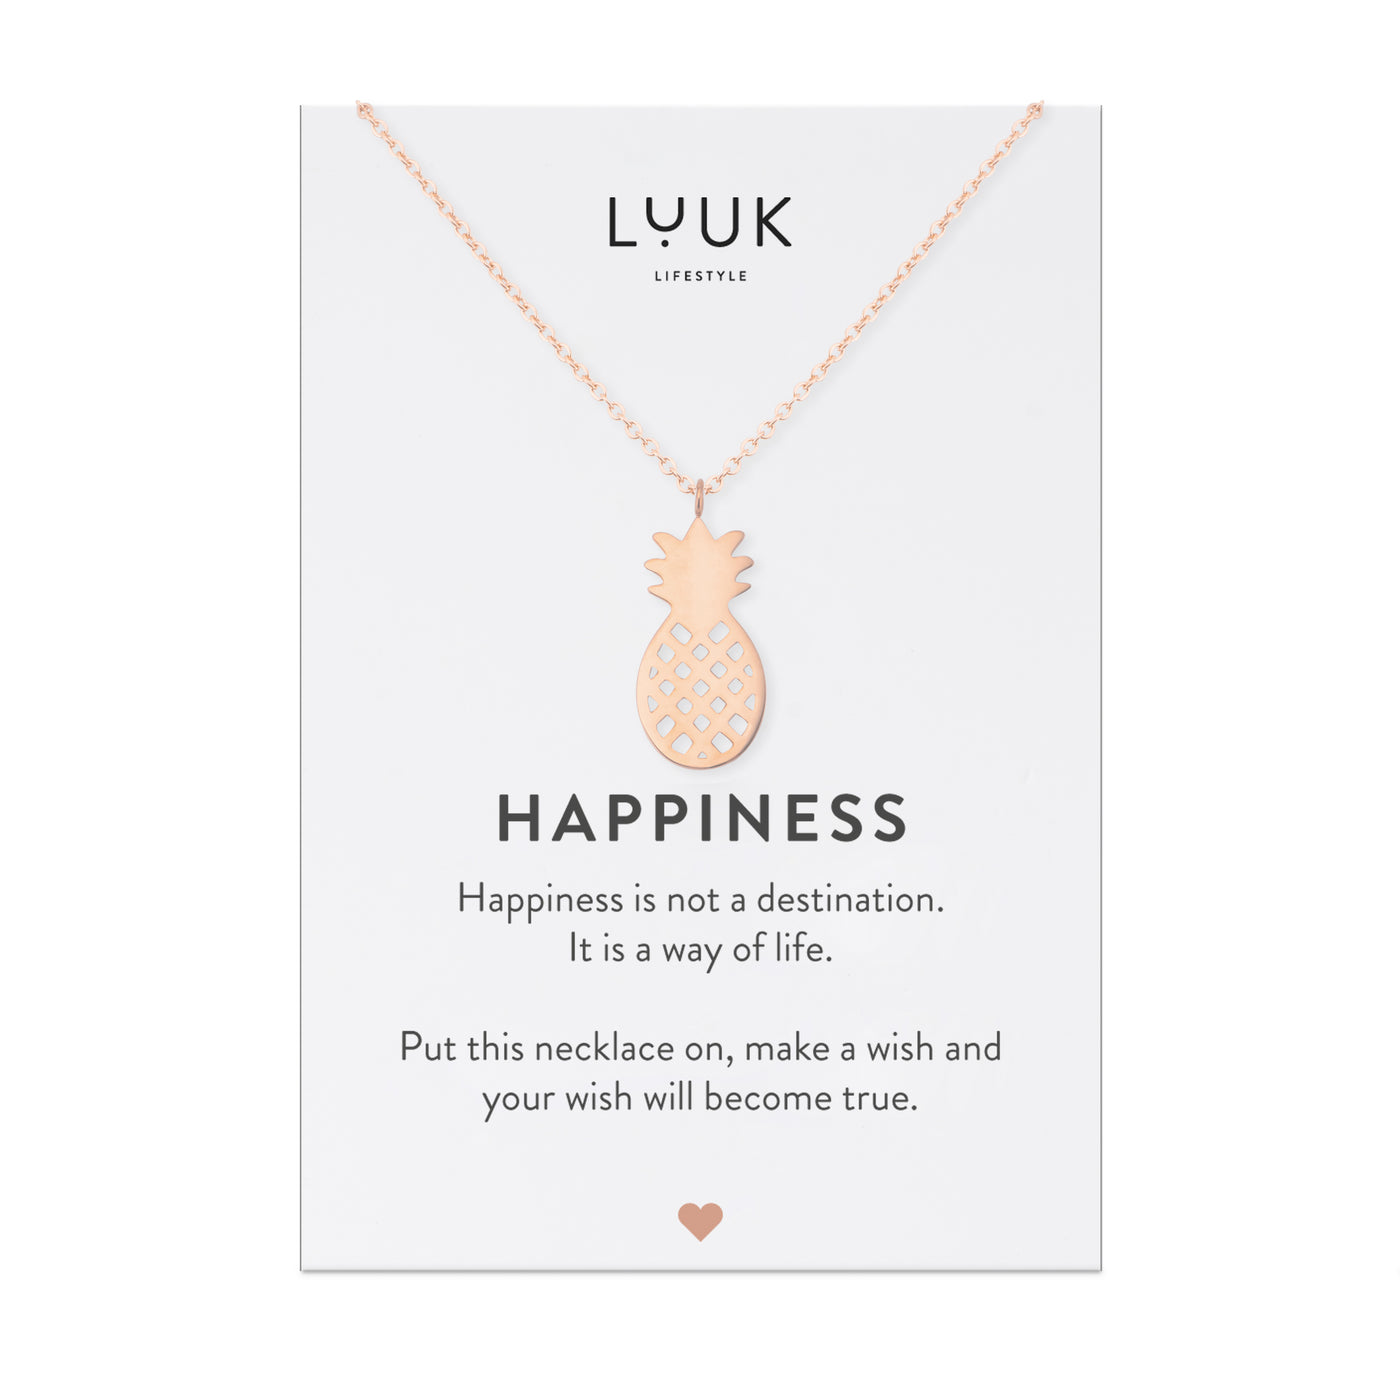 Halskette mit Ananas Anhänger in Roségold auf Happiness Spruchkarte von Luuk Lifestyle